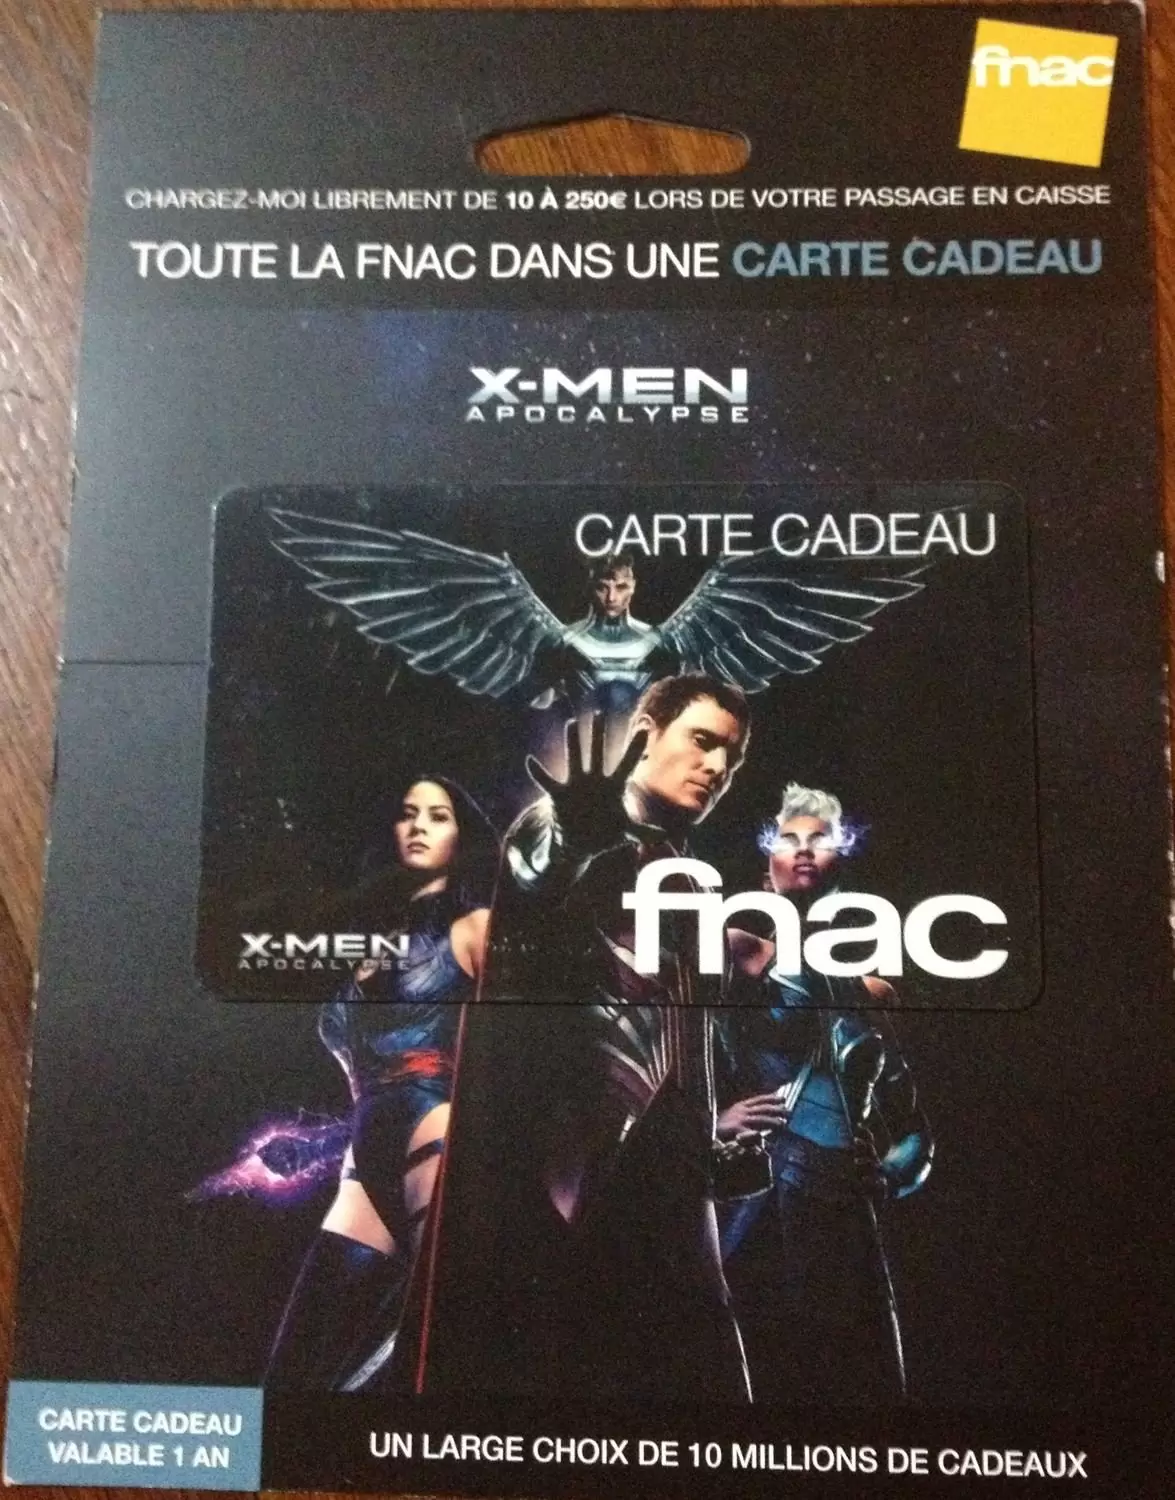 Cartes cadeau Fnac - Carte cadeau Fnac X-Men Apocalypse avec encart